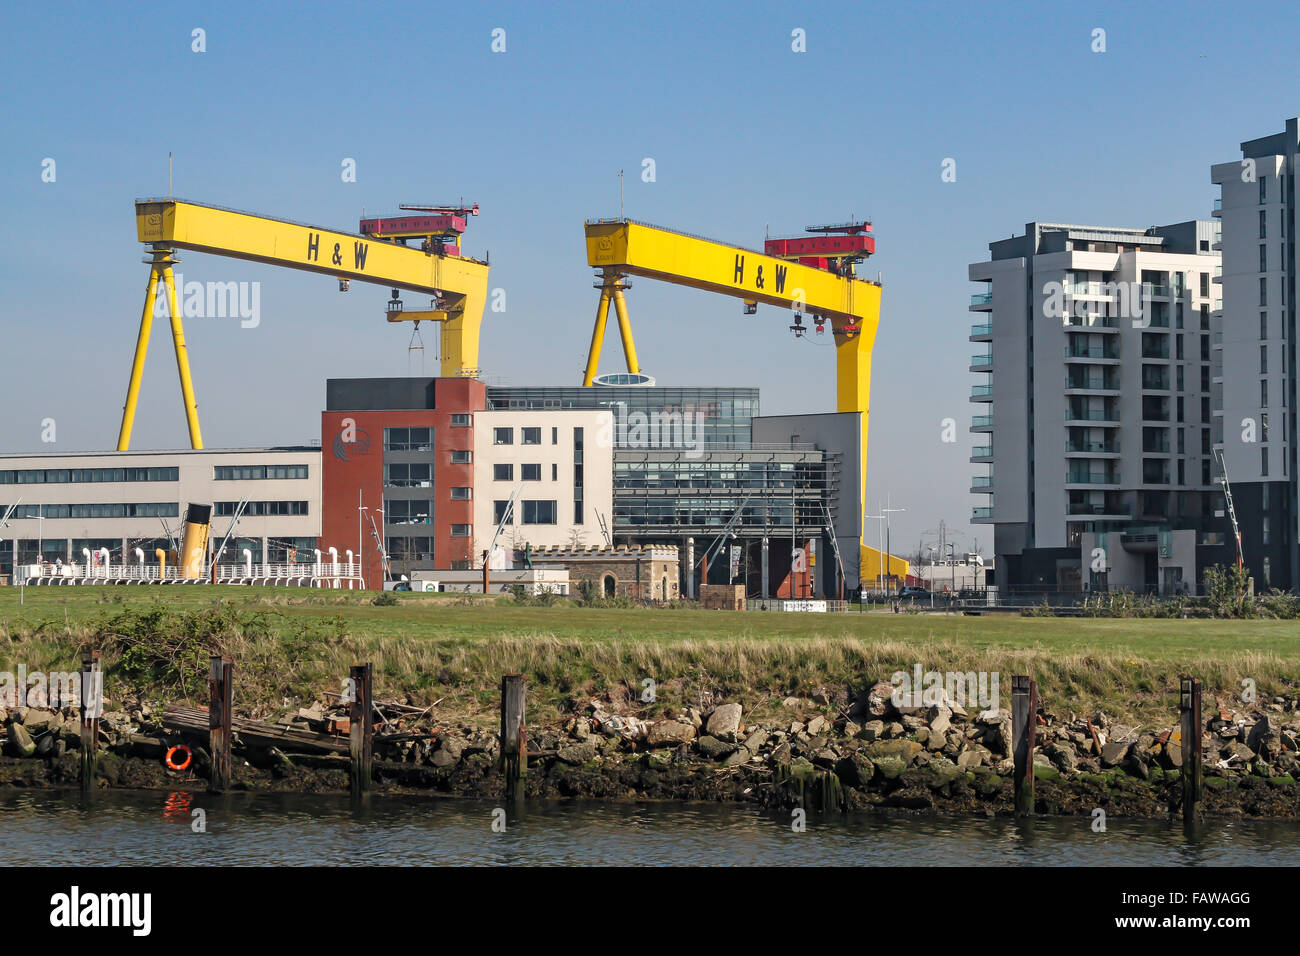 Grues de chantier Belfast Harland et les grues emblématiques de Wolff Samson (plus haute) et Goliath ont été construites par Krupp et sont une vue célèbre sur la ville. Banque D'Images